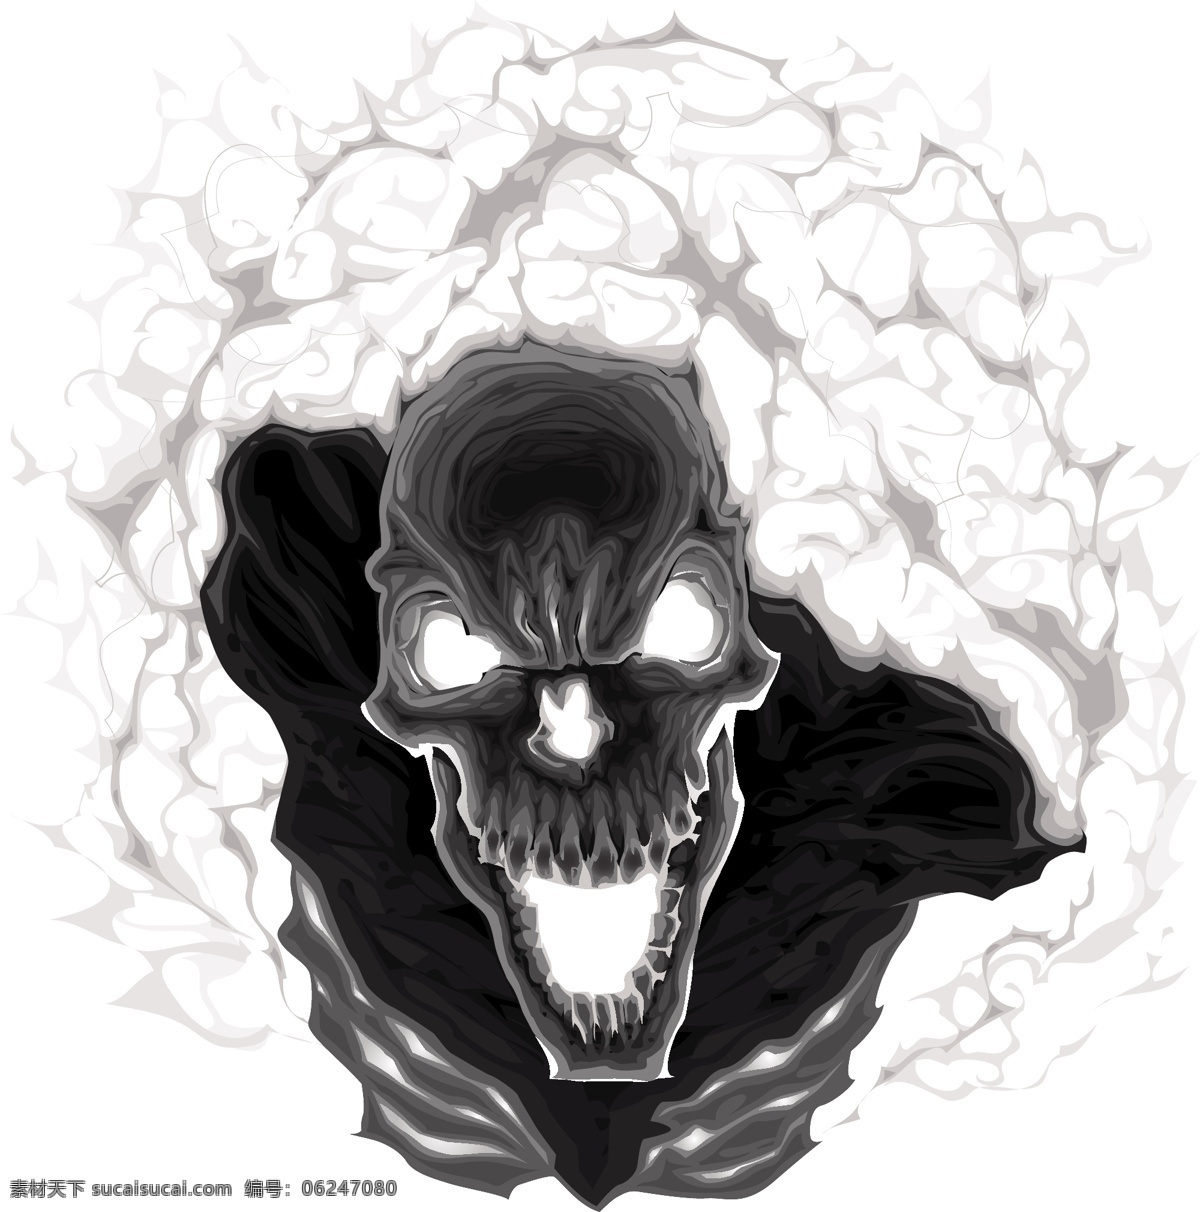 魔鬼 骷髅 手绘 动漫设计 恐怖 文化艺术 矢量